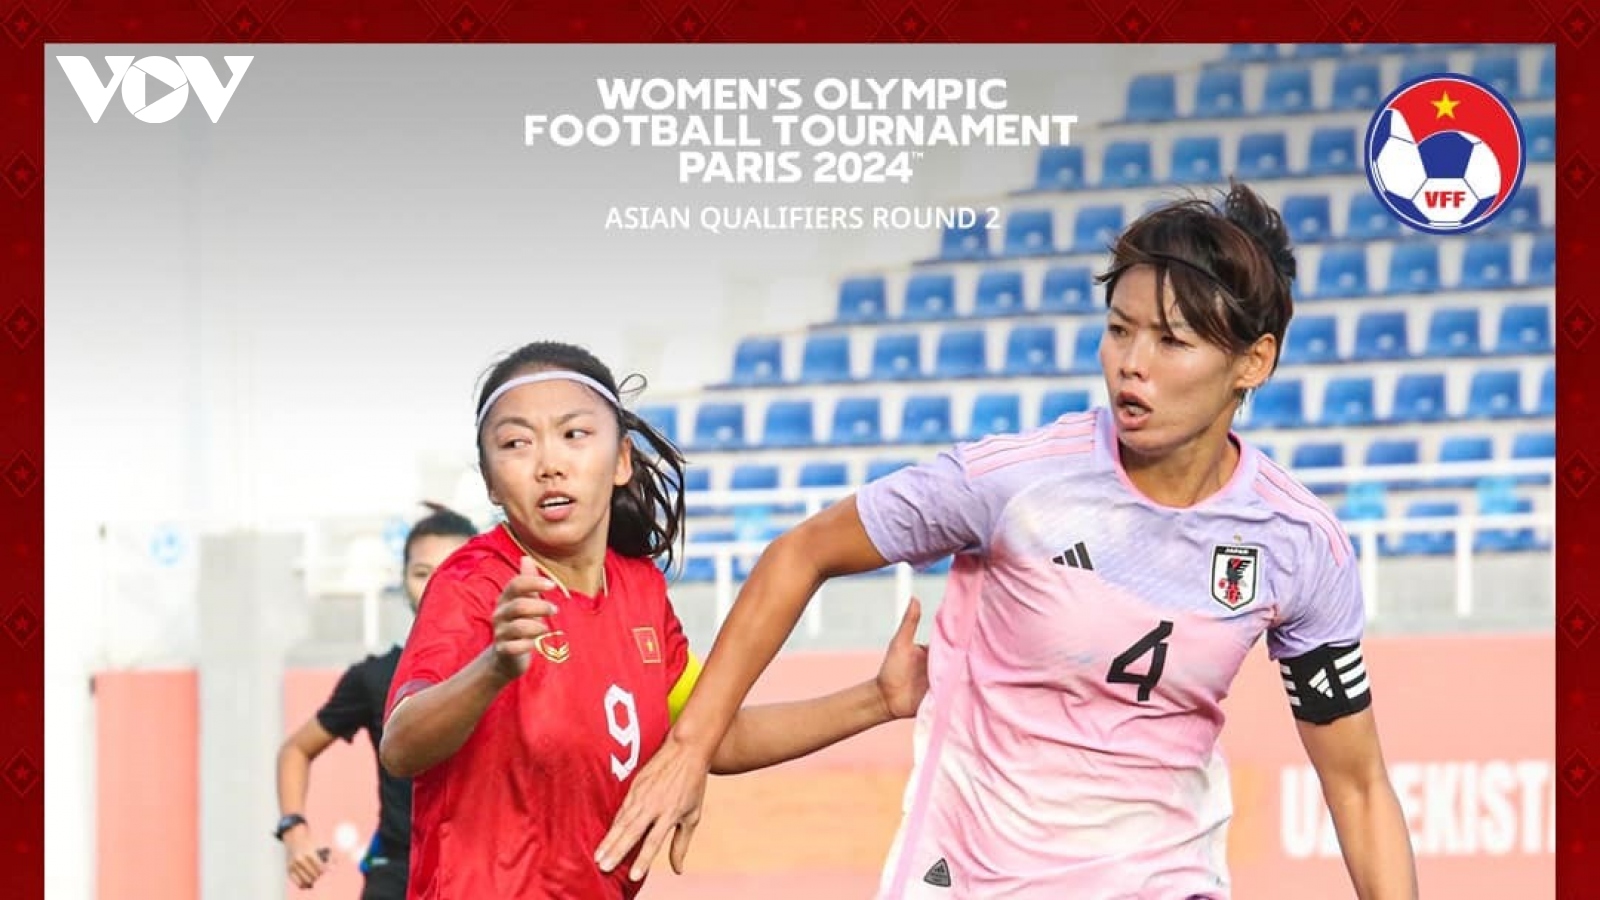 Thua Nhật Bản 0-2, ĐT nữ Việt Nam kết thúc hành trình vòng loại Olympic Paris